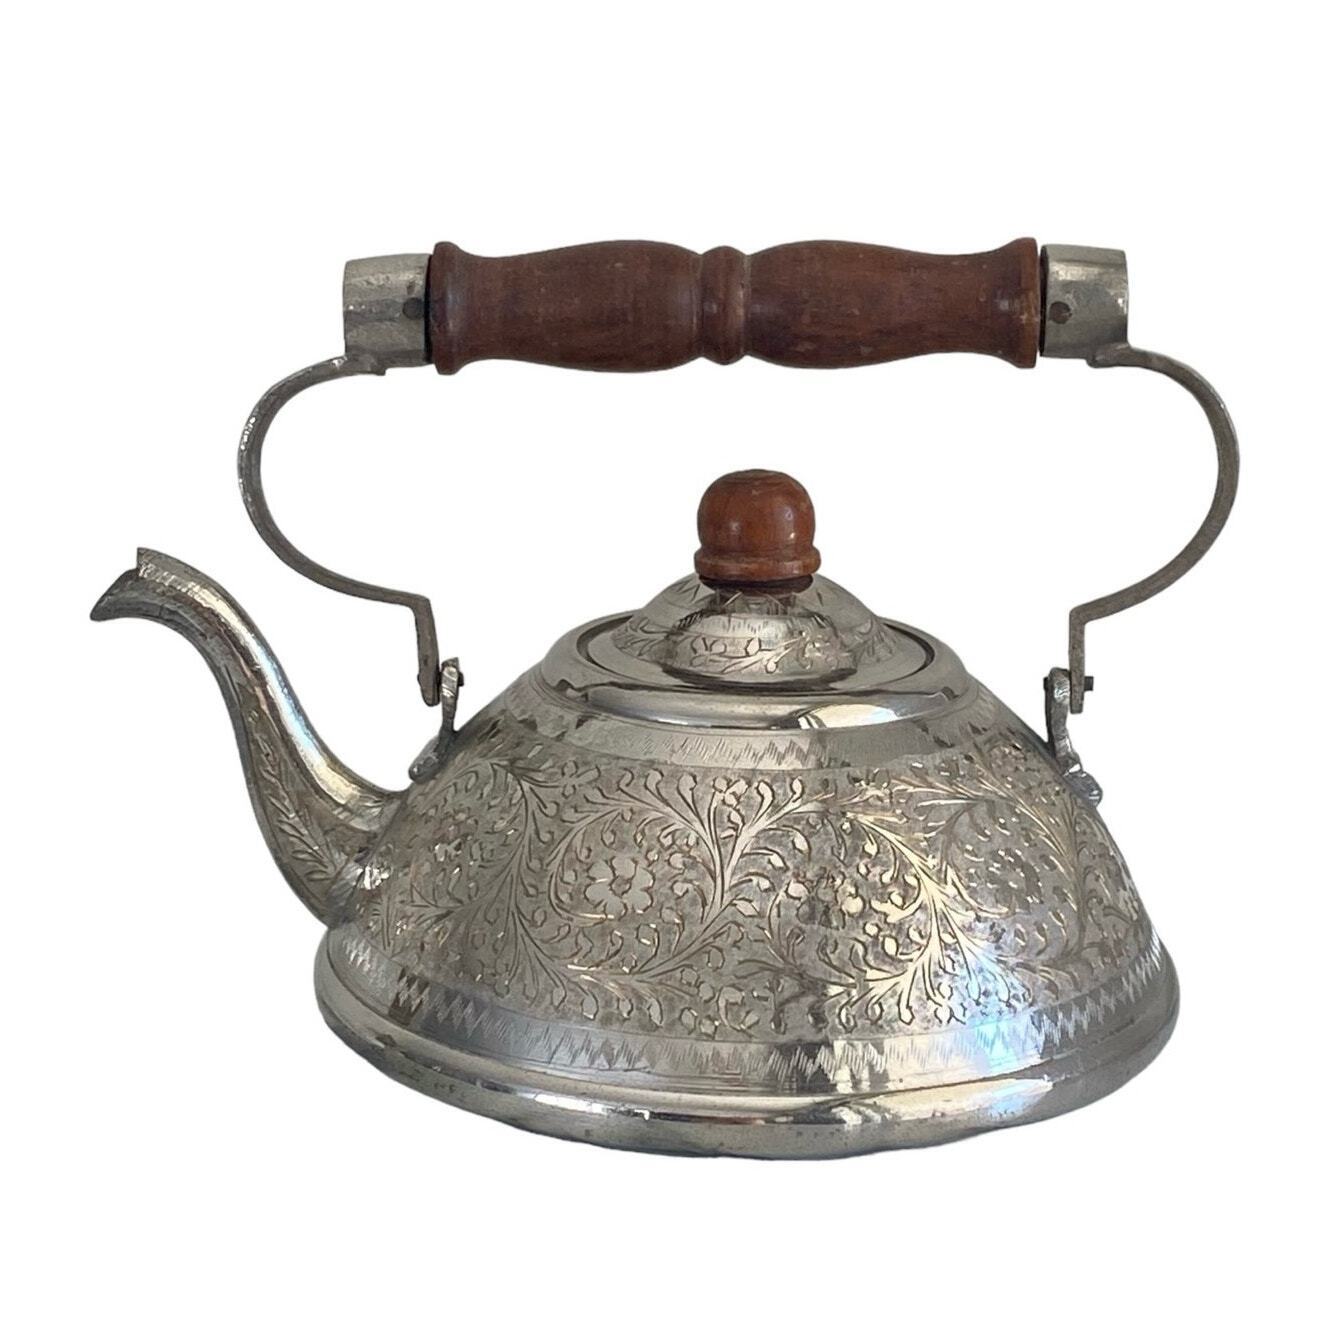 Vintage Ornate Engraved Metal Tea Kettle Silver Tone Brown Wood Handle India 